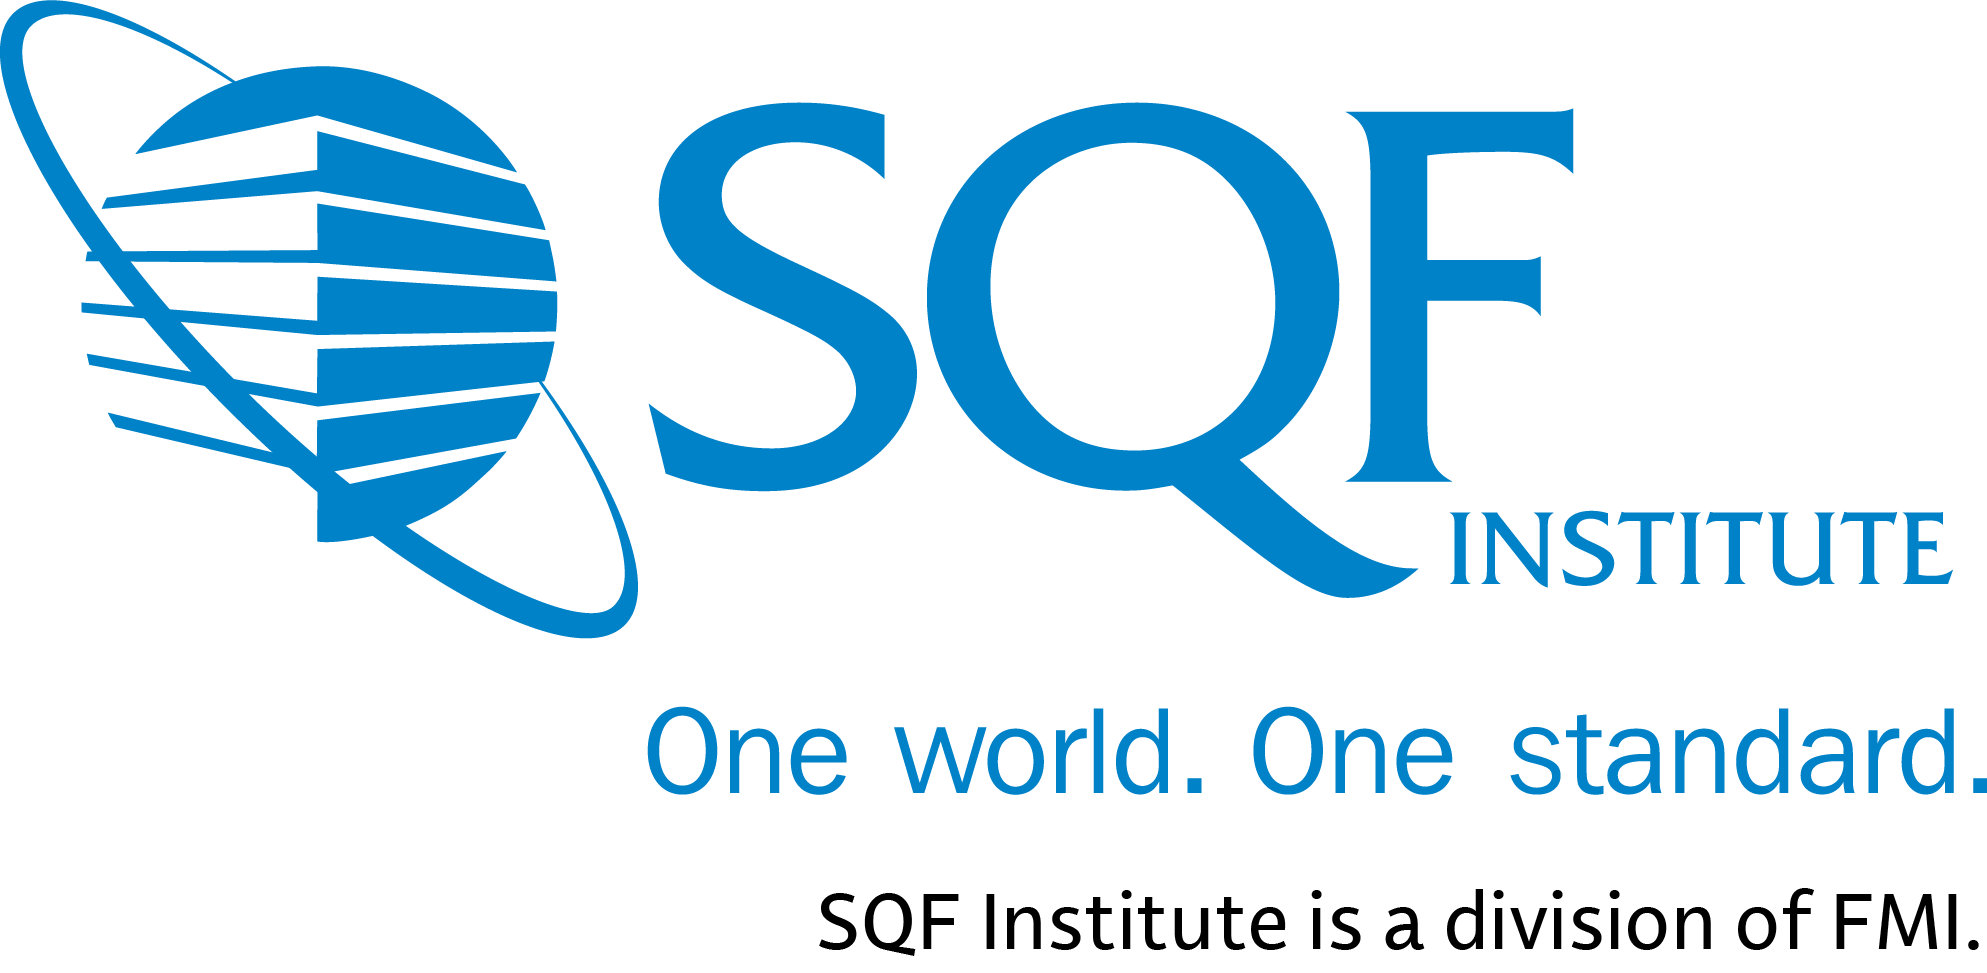 SQFI CB Certificate Logo